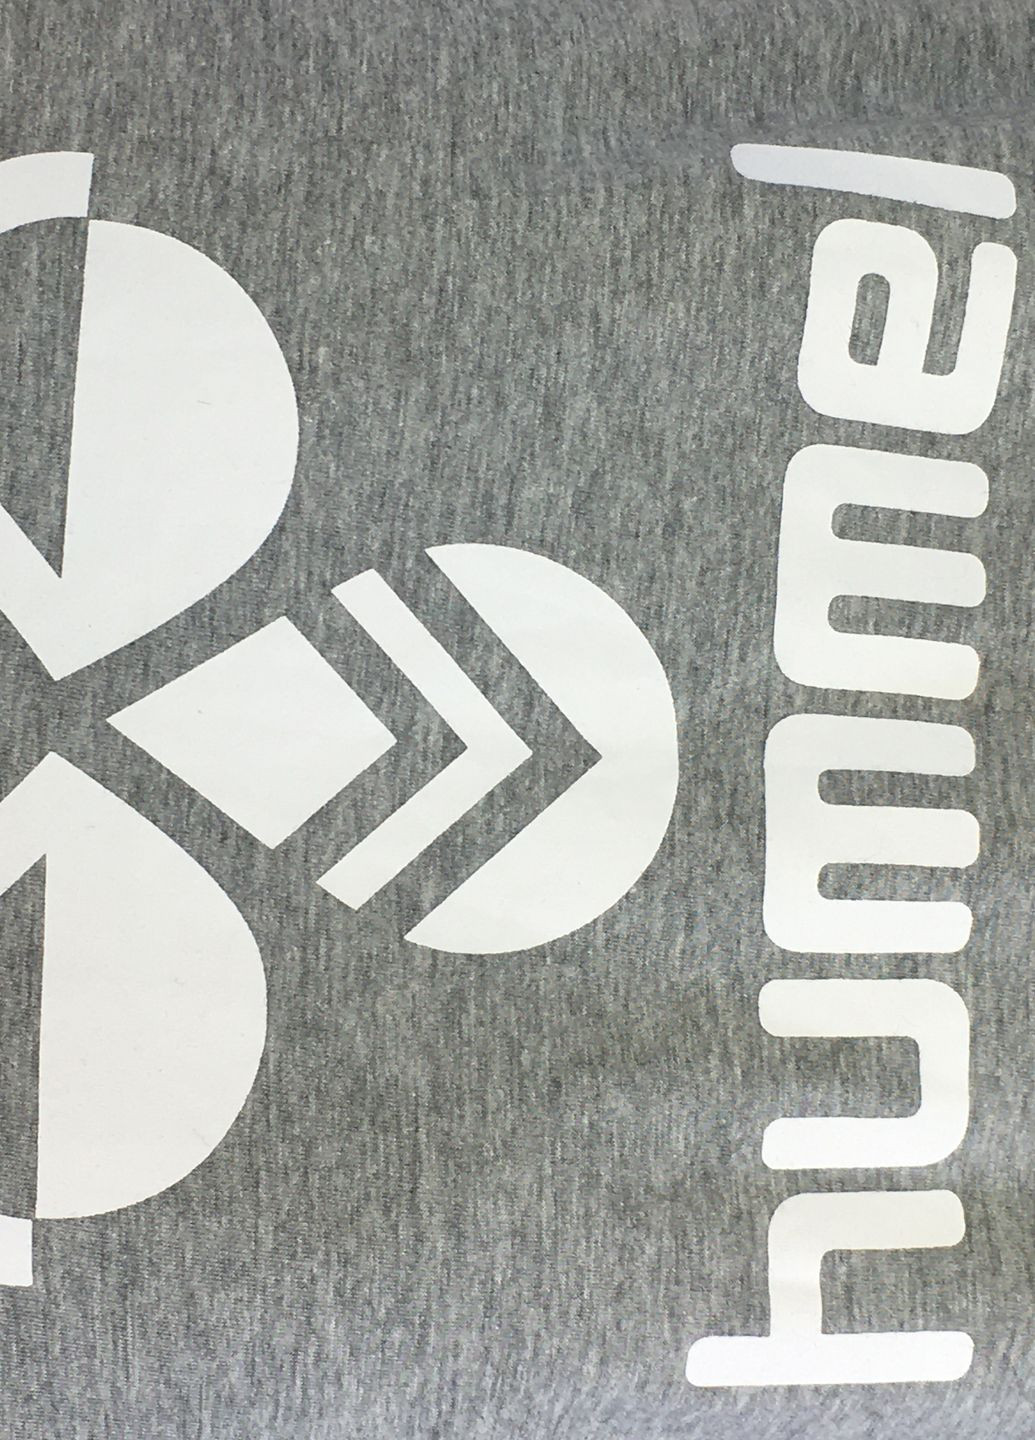 Сіра футболка з коротким рукавом Hummel